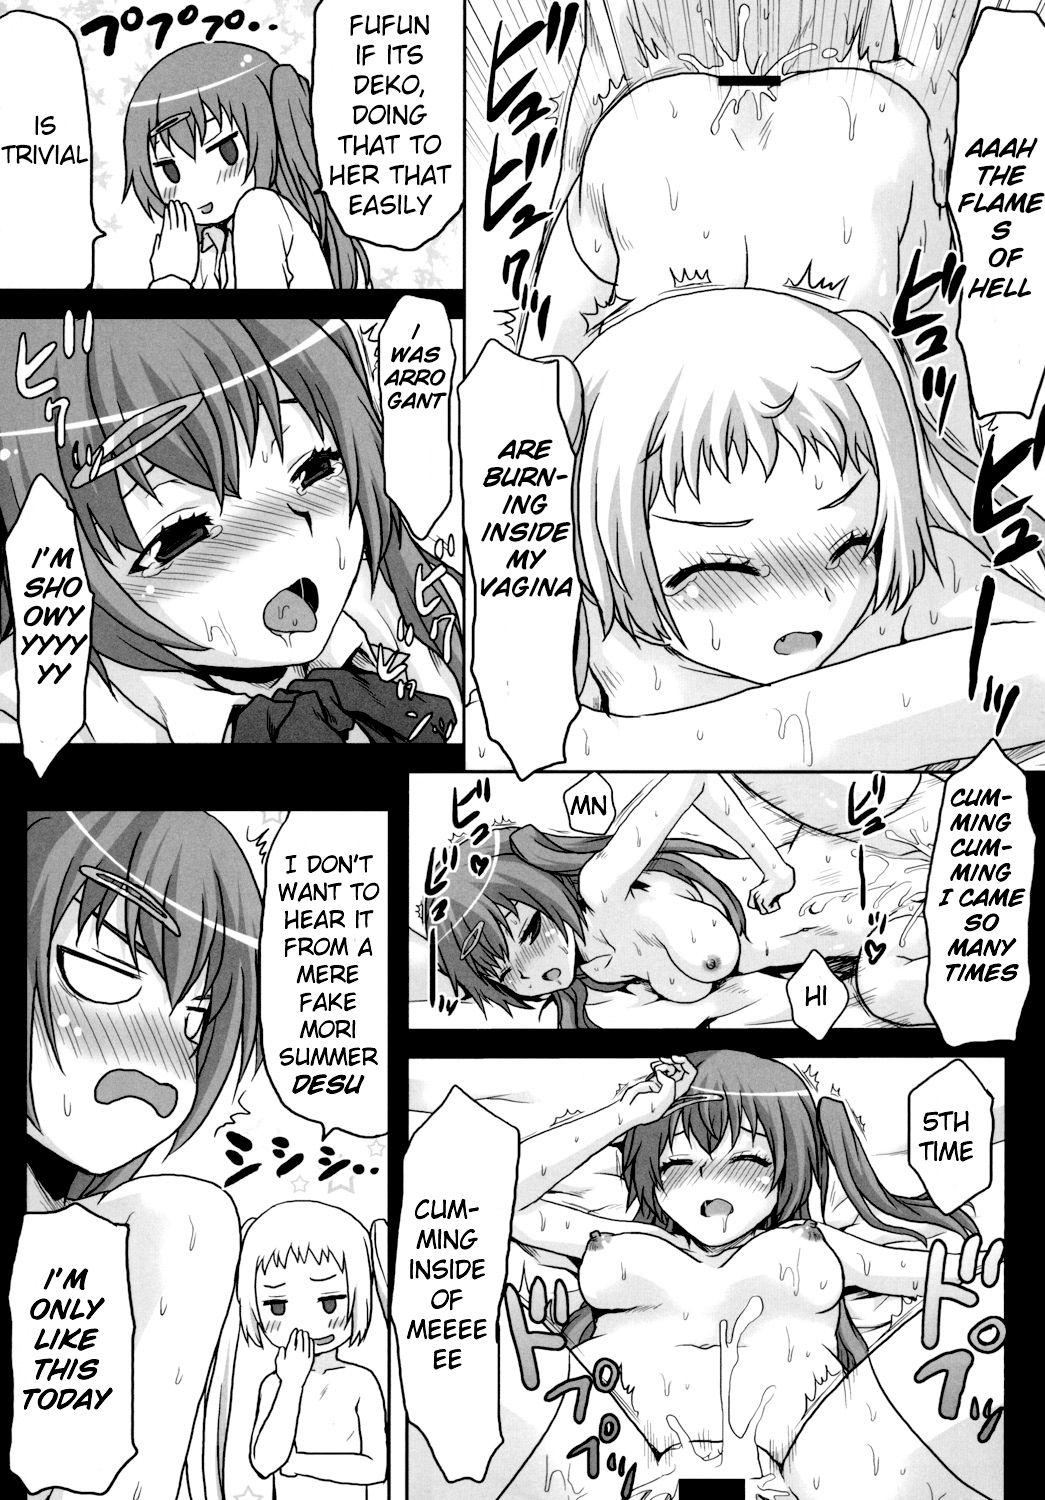 Slut Porn Omodume BOX XXIV - Chuunibyou demo koi ga shitai Thot - Page 8